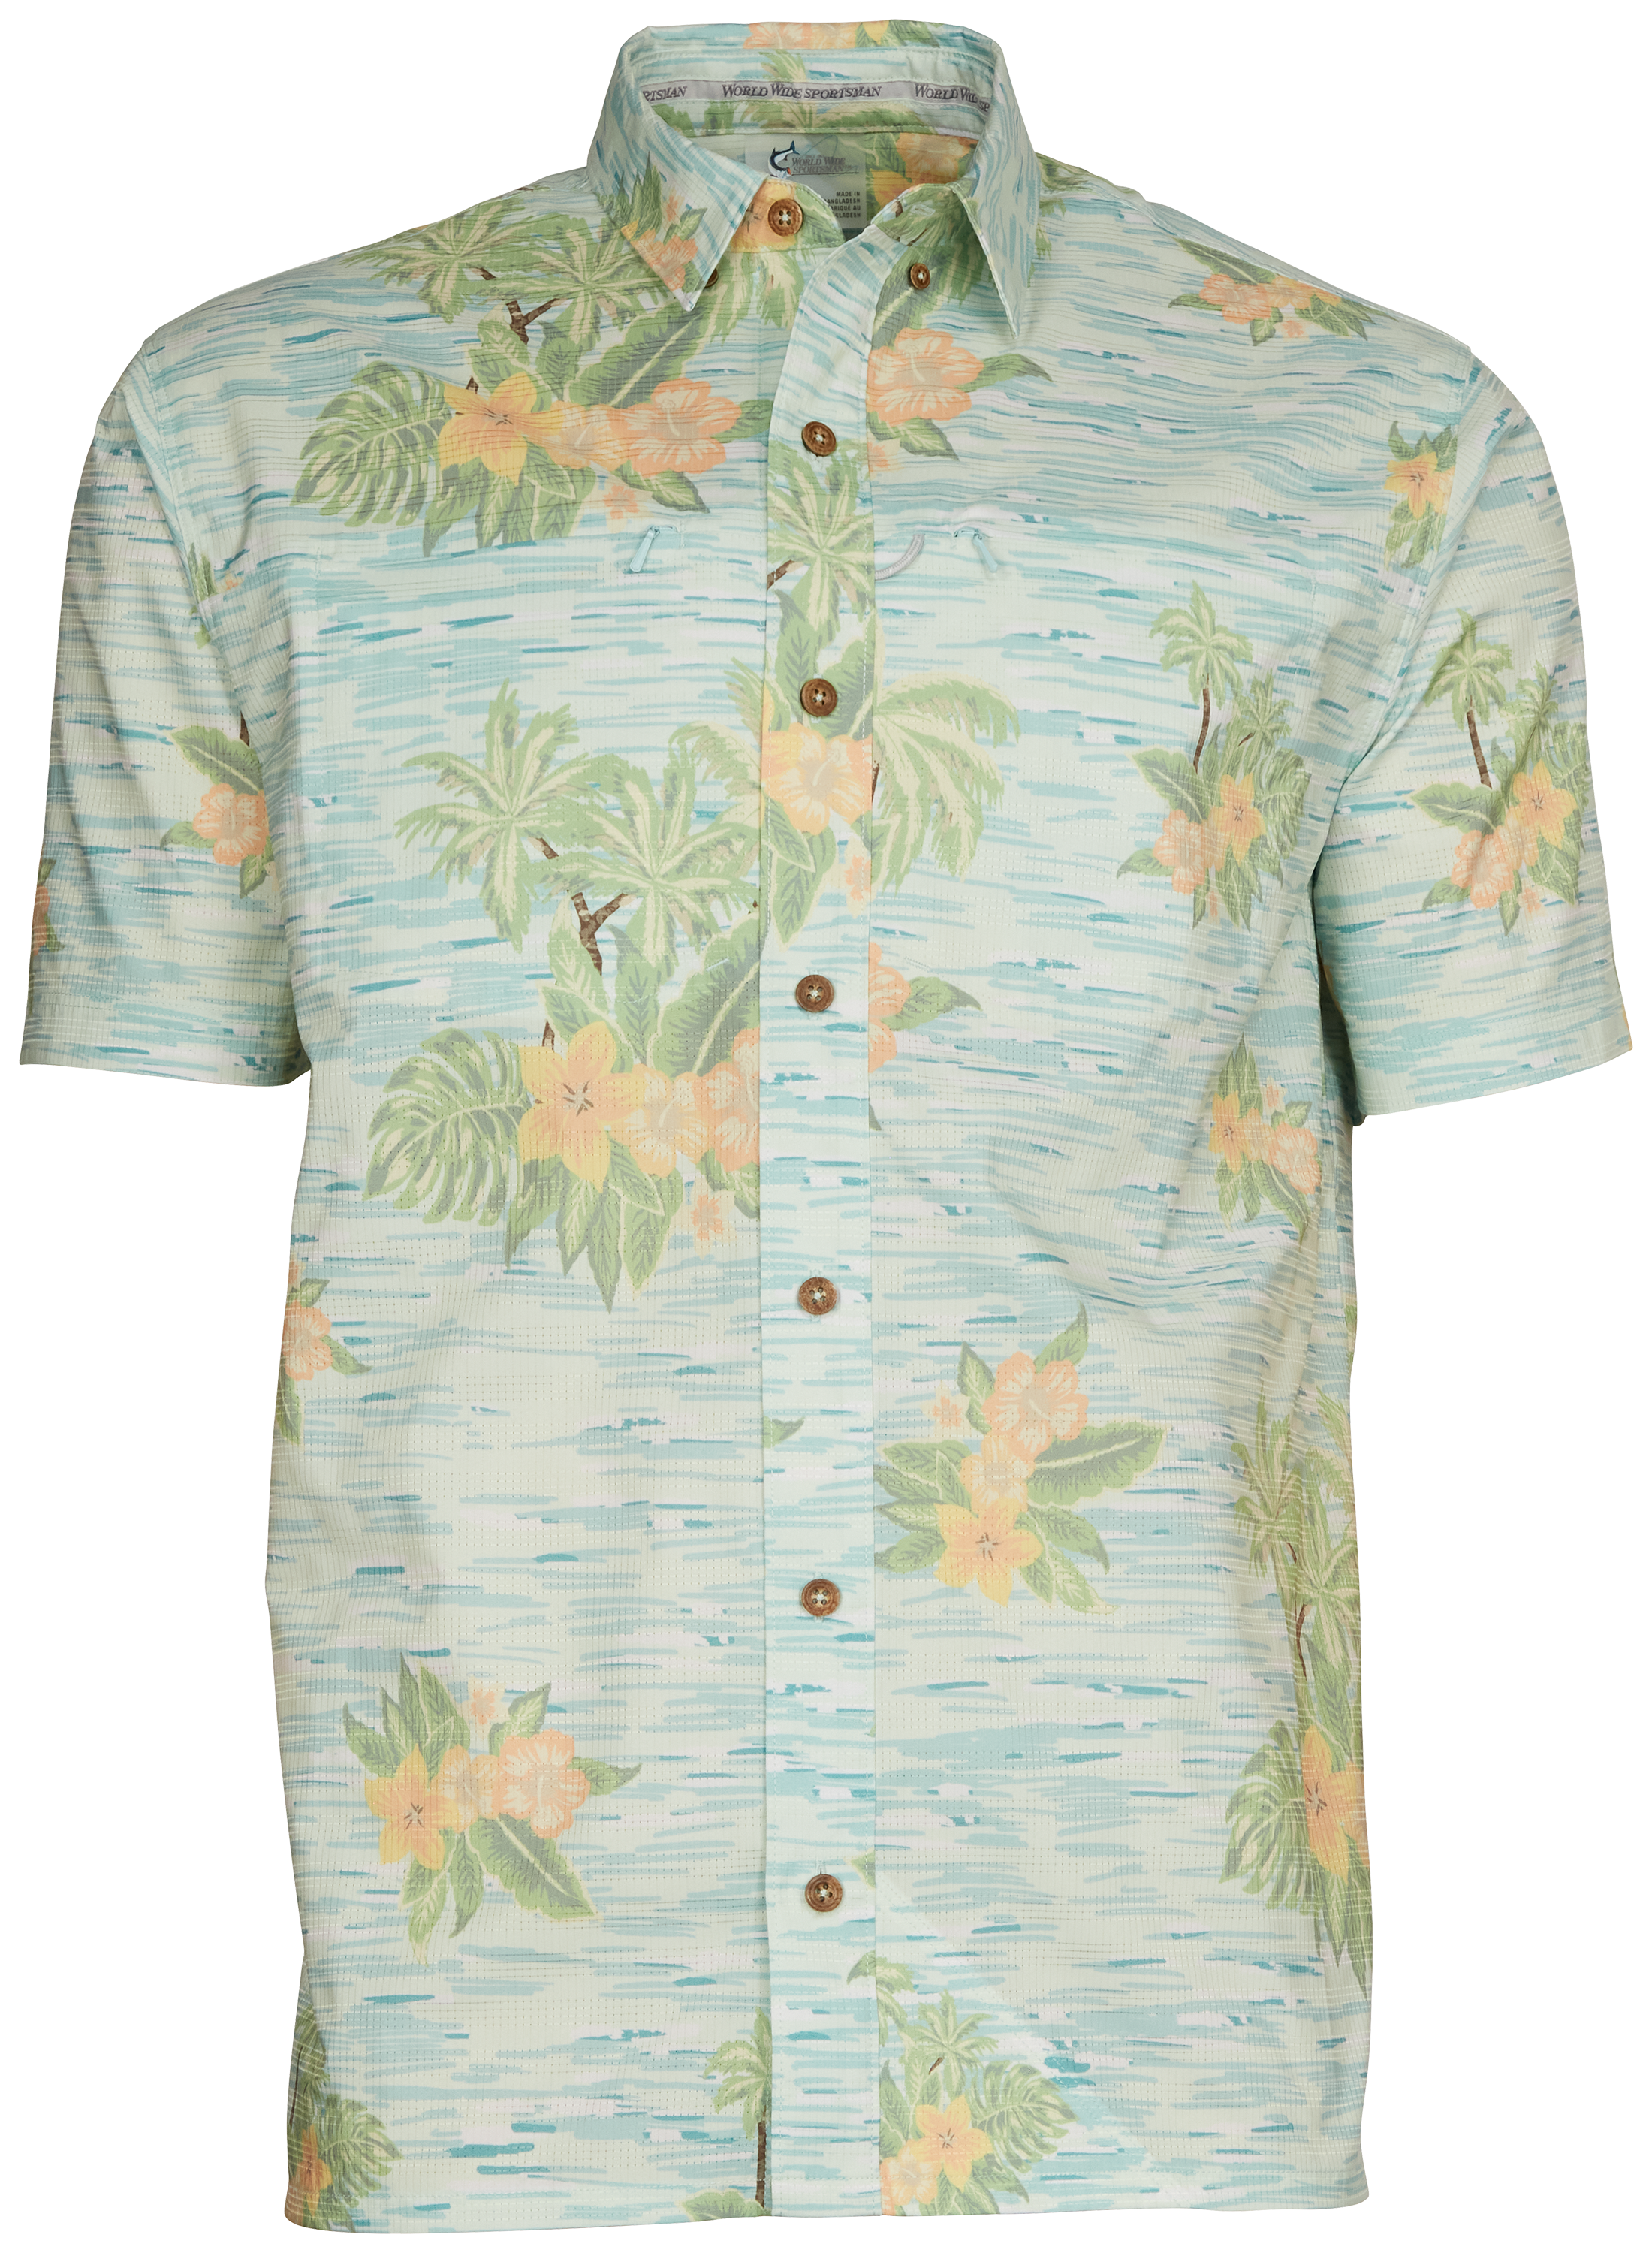 World Wide Sportsman Seacrest Print Short-Sleeve Button-Down Shirt for Men - Blue Hawaiian - M